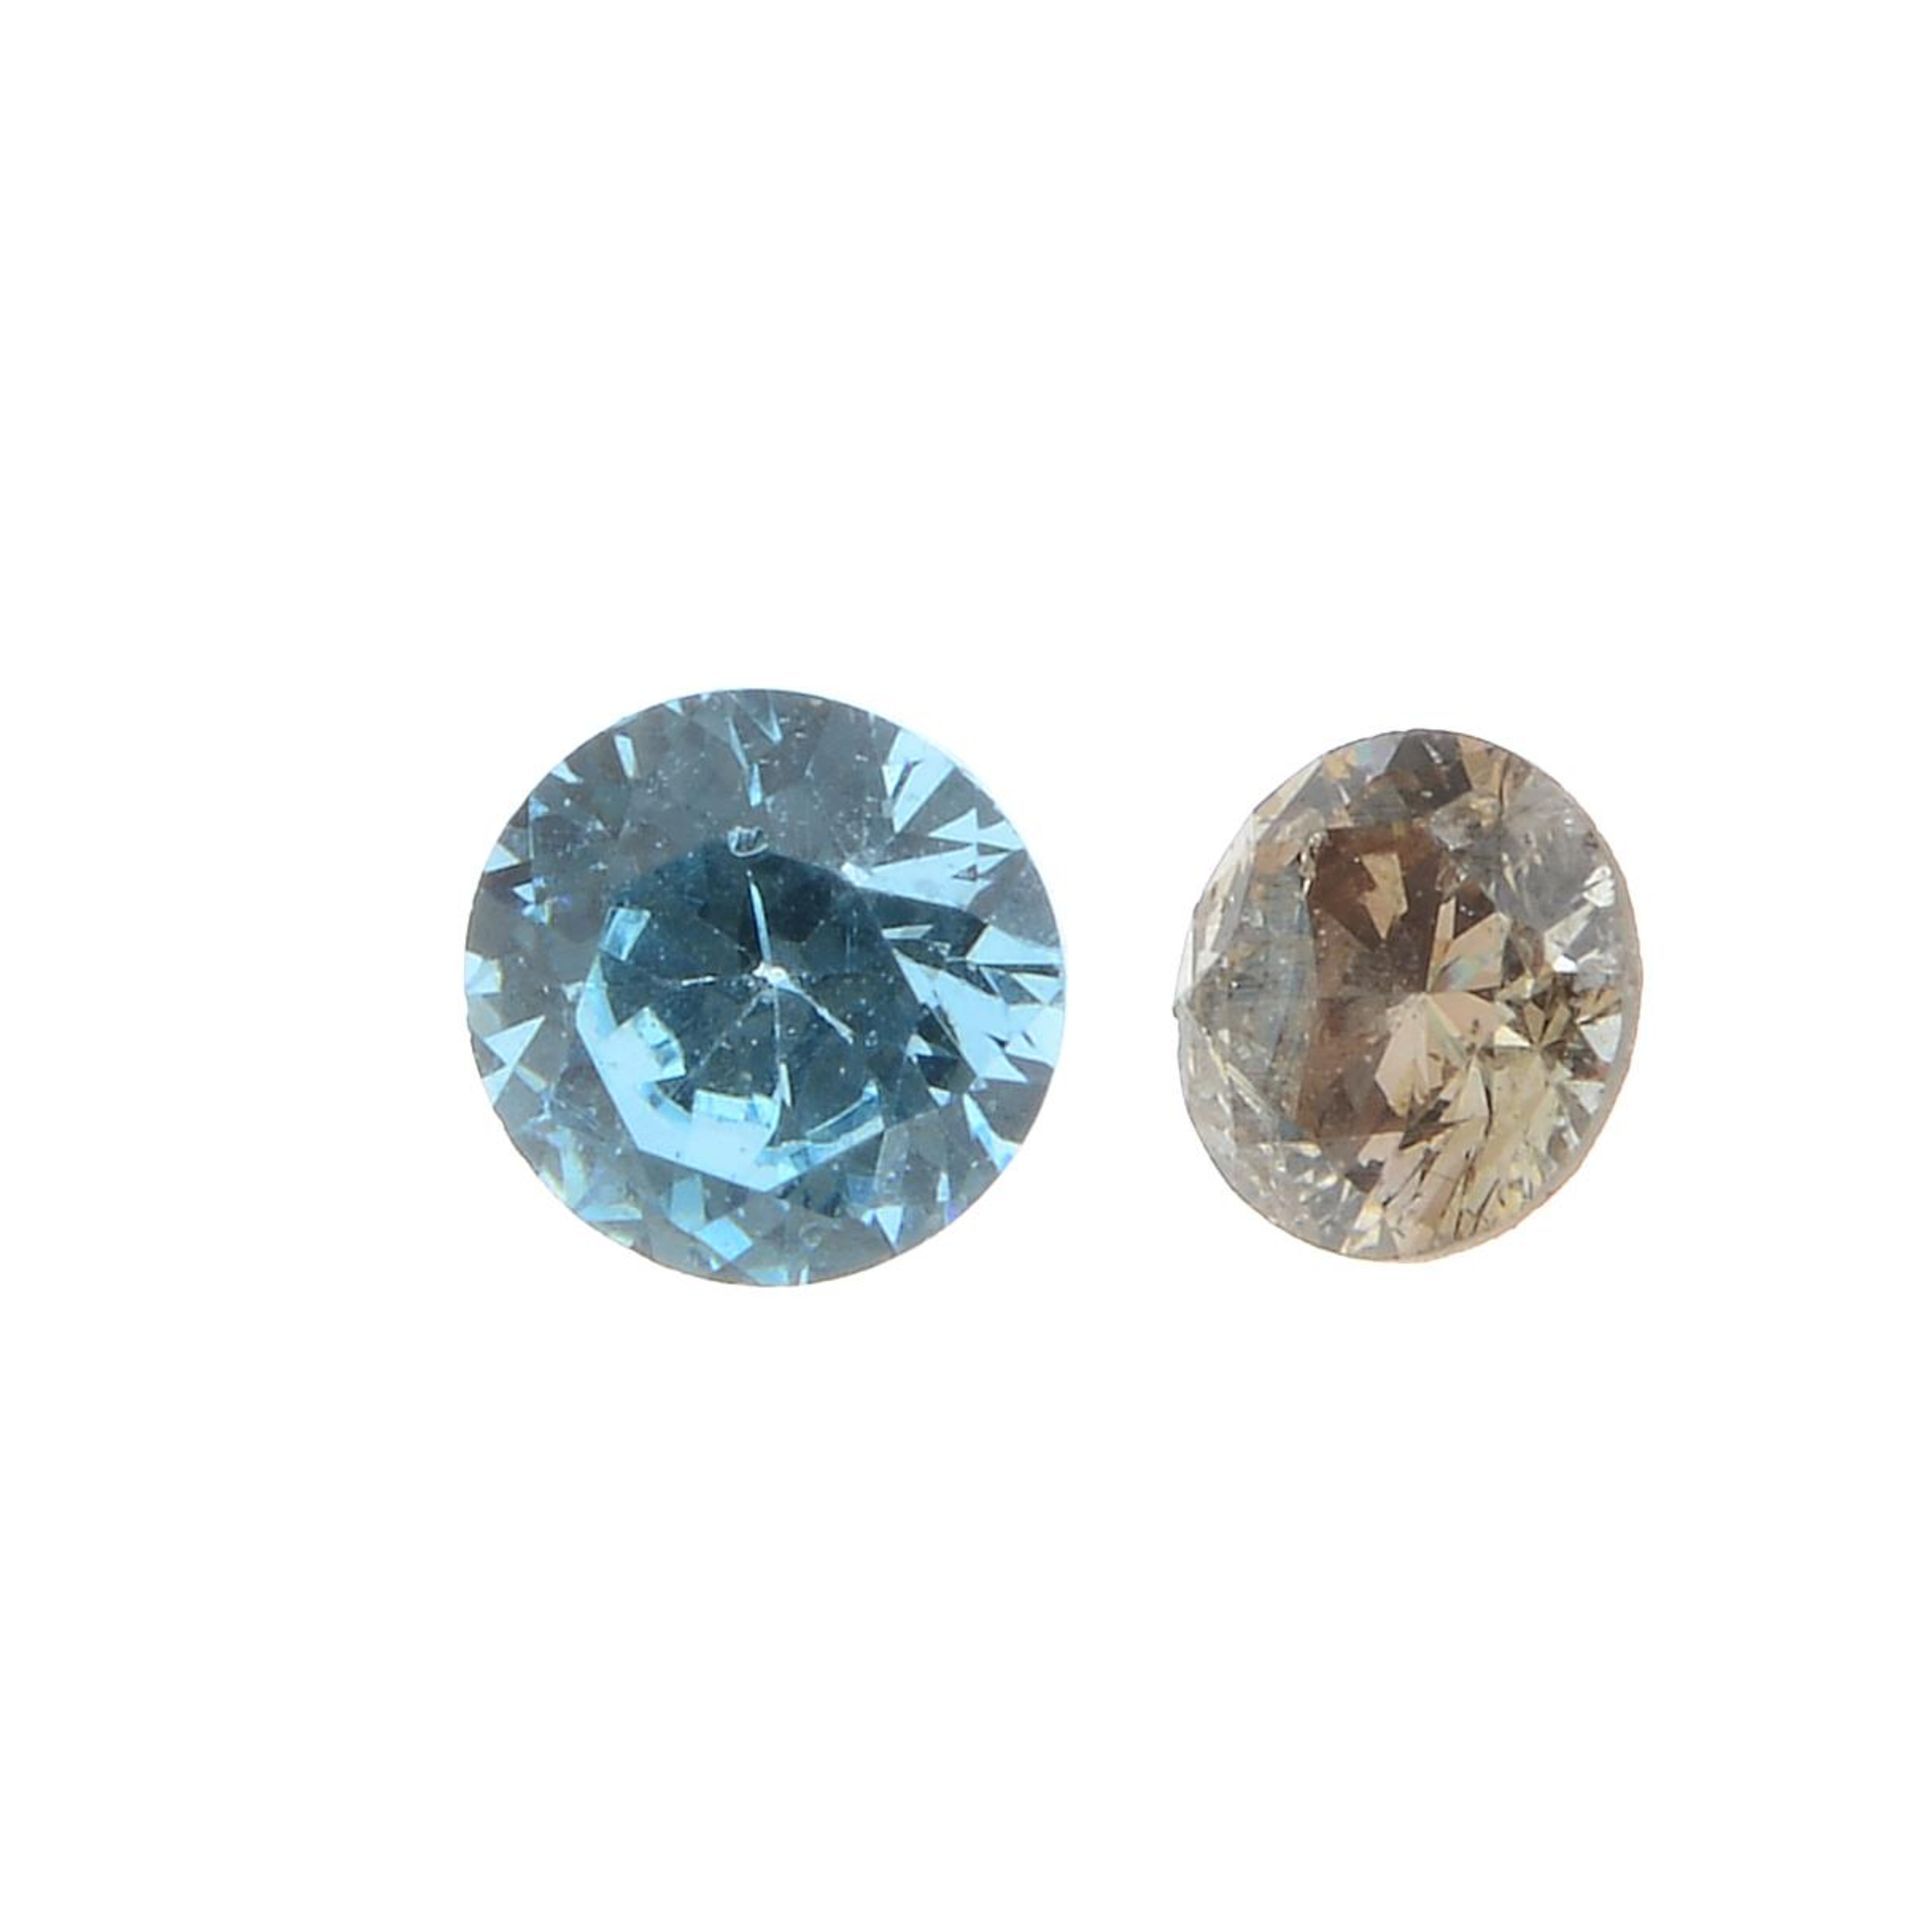 A selection of vari-shape, vari-colour diamonds.